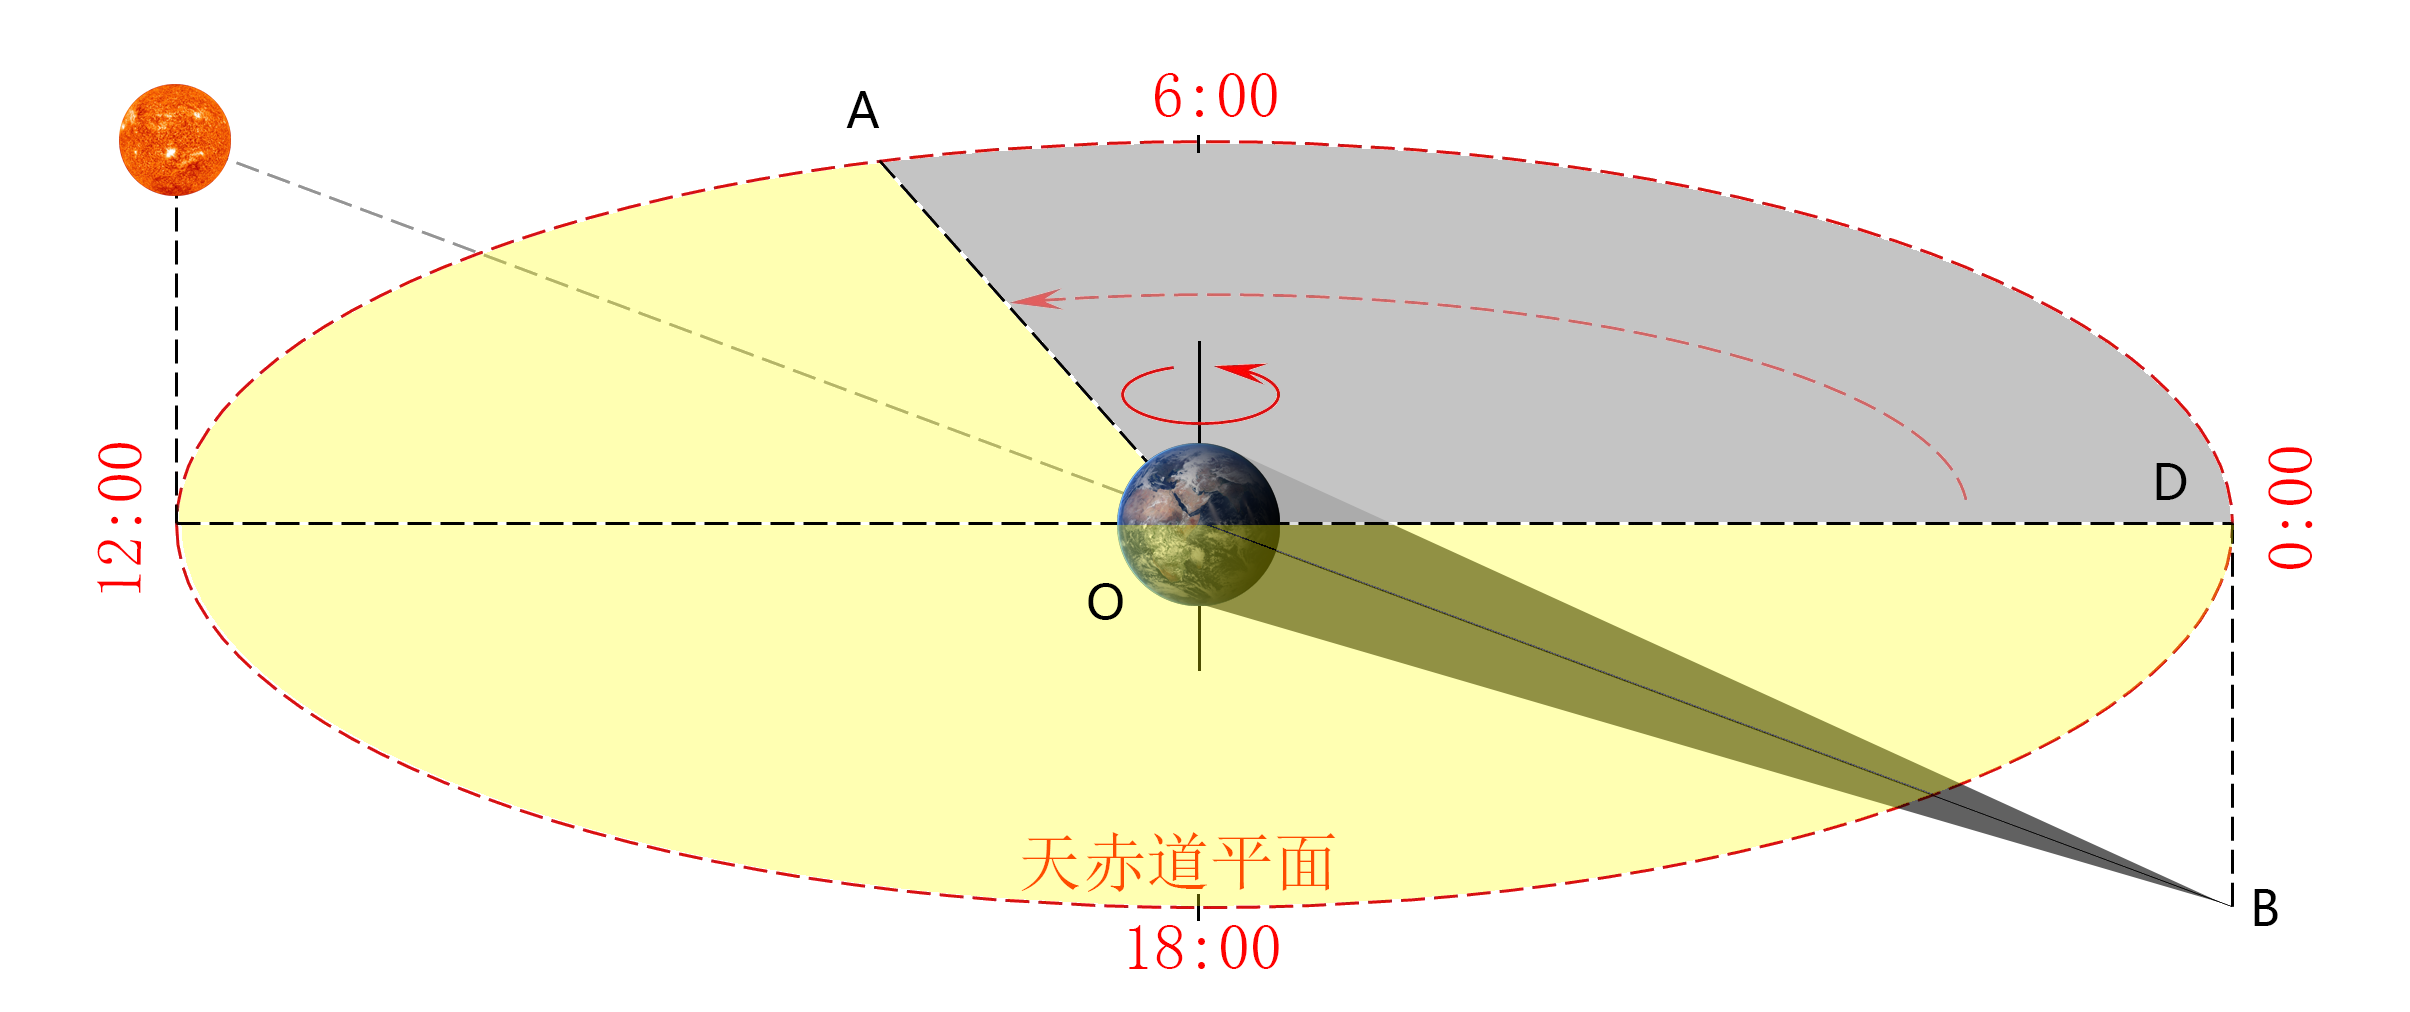 日晷夹角地理图示图片